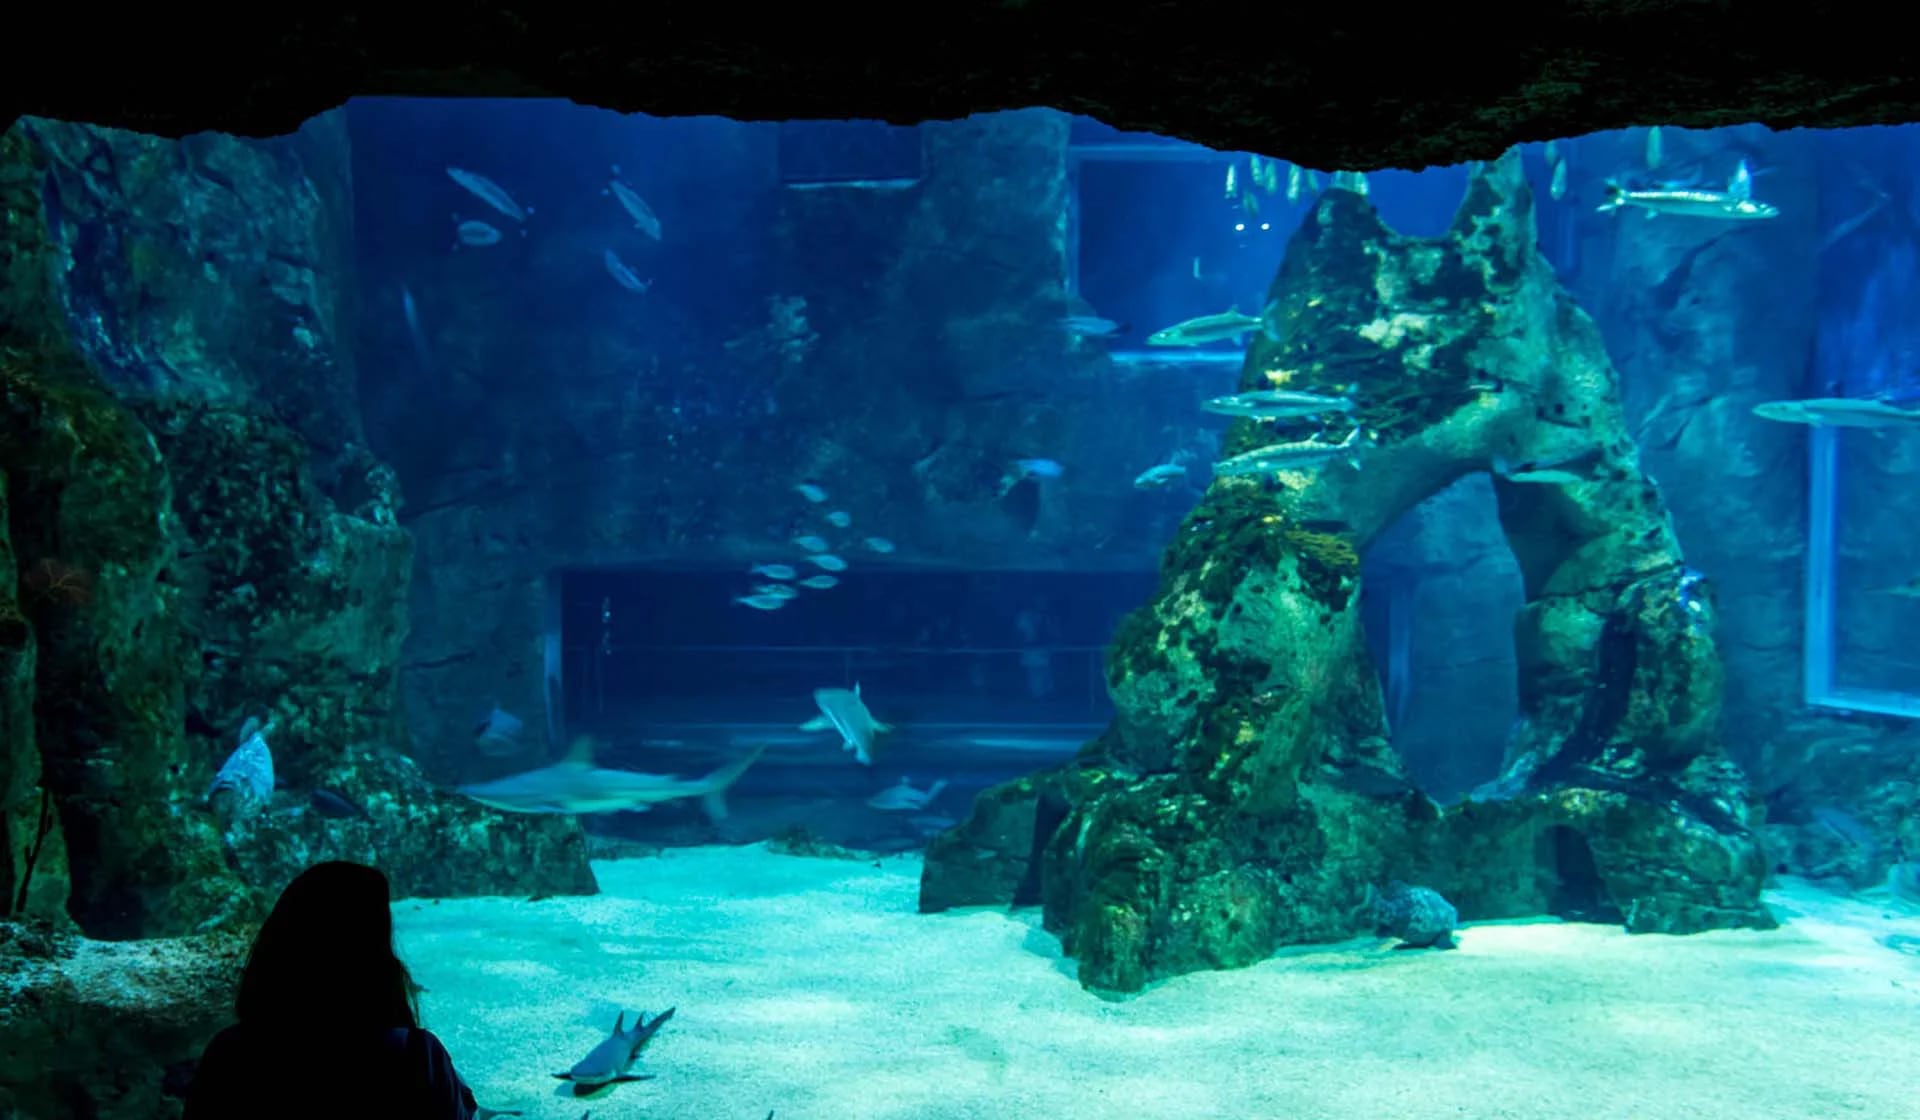 El aquarium, uno de los puntos más visitados por los turistas